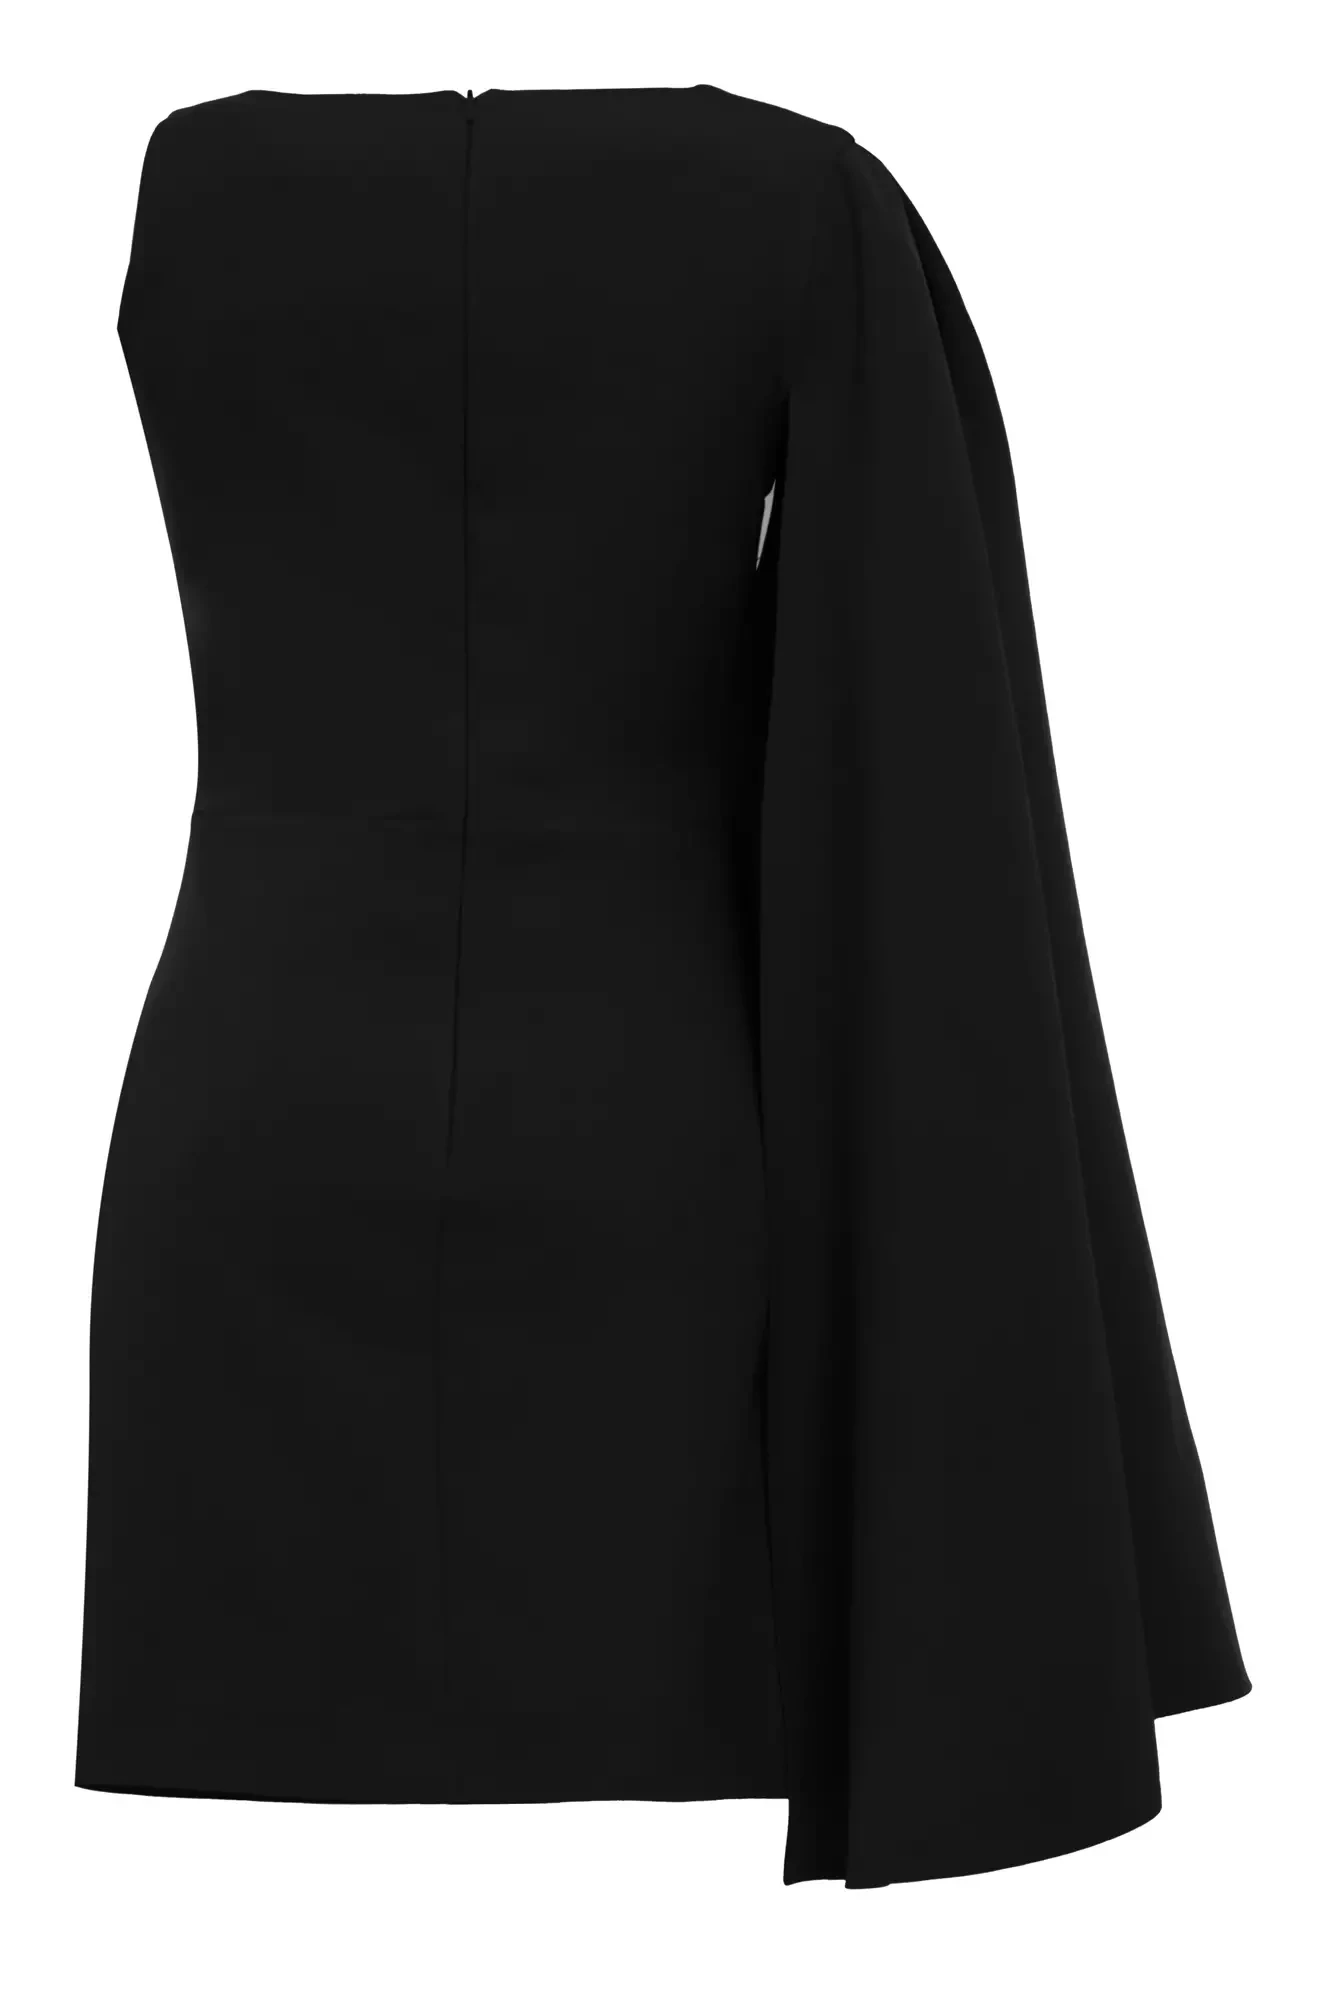 Black crepe one arm mini dress